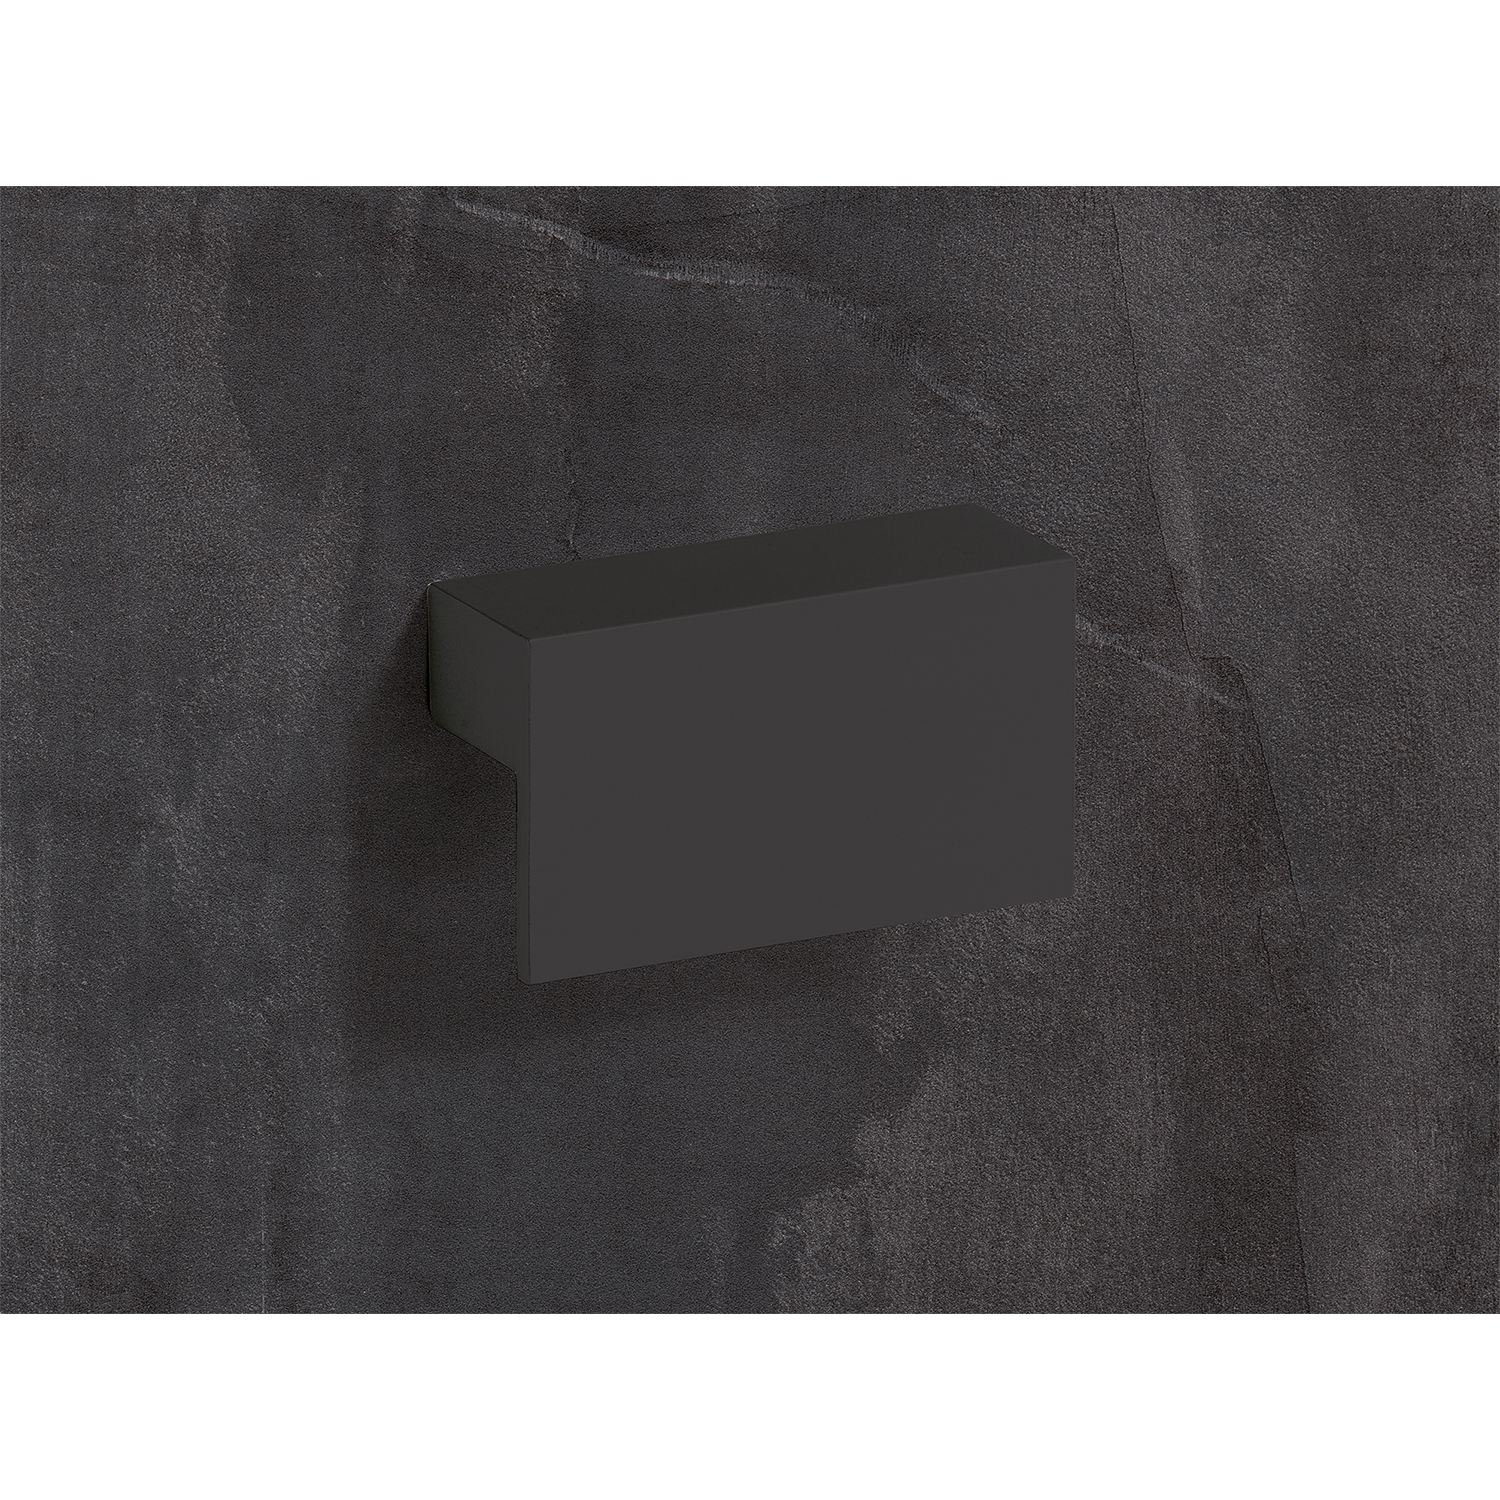 HETTICH Griff Trani, •–• 96, L 96 mm, B 26 mm, H 16 mm, Schwarz matt, 9265971